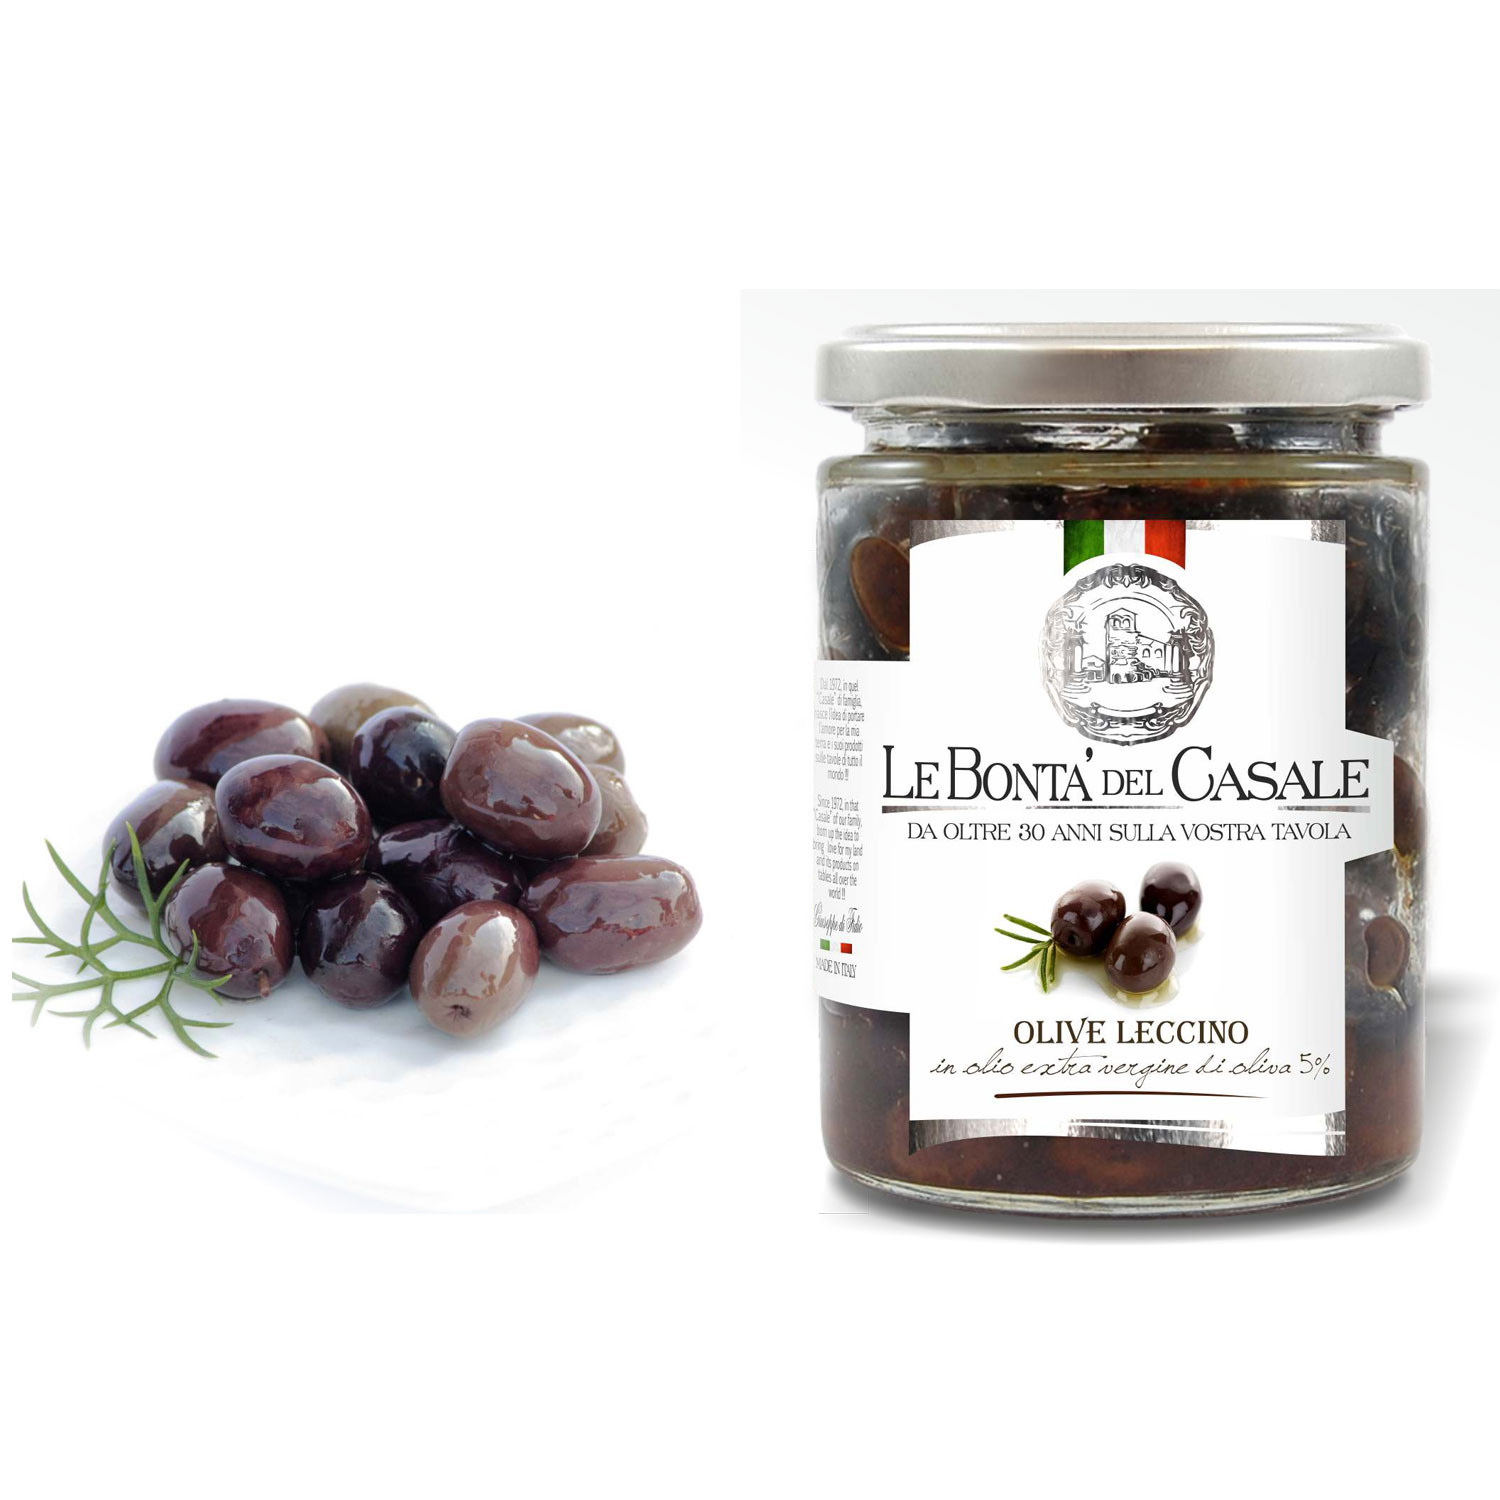 Оливки сорта "Леччино" в оливковом масле extravirgin. Купить интернет-магазине Olivaitalia